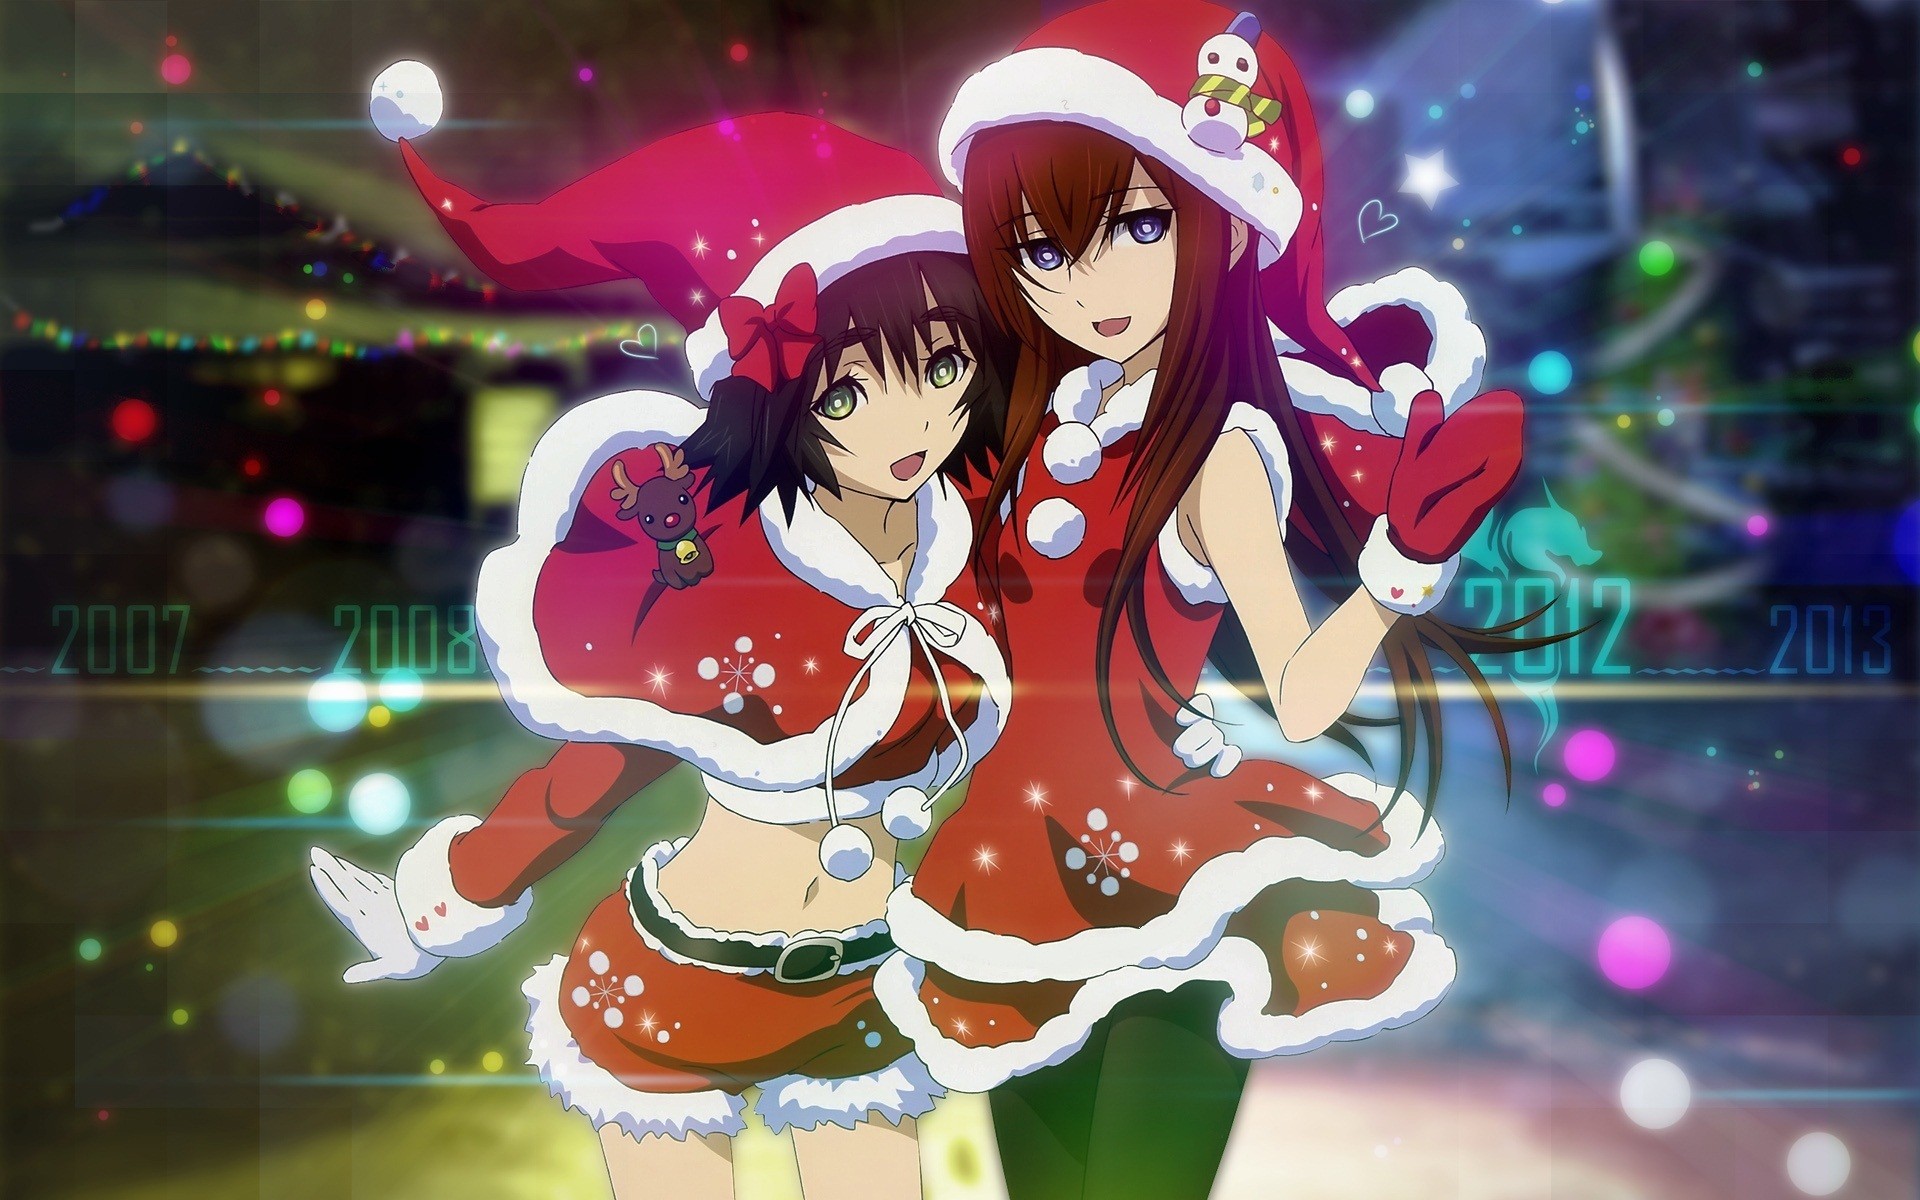 58+] Anime Christmas Wallpapers - WallpaperSafari